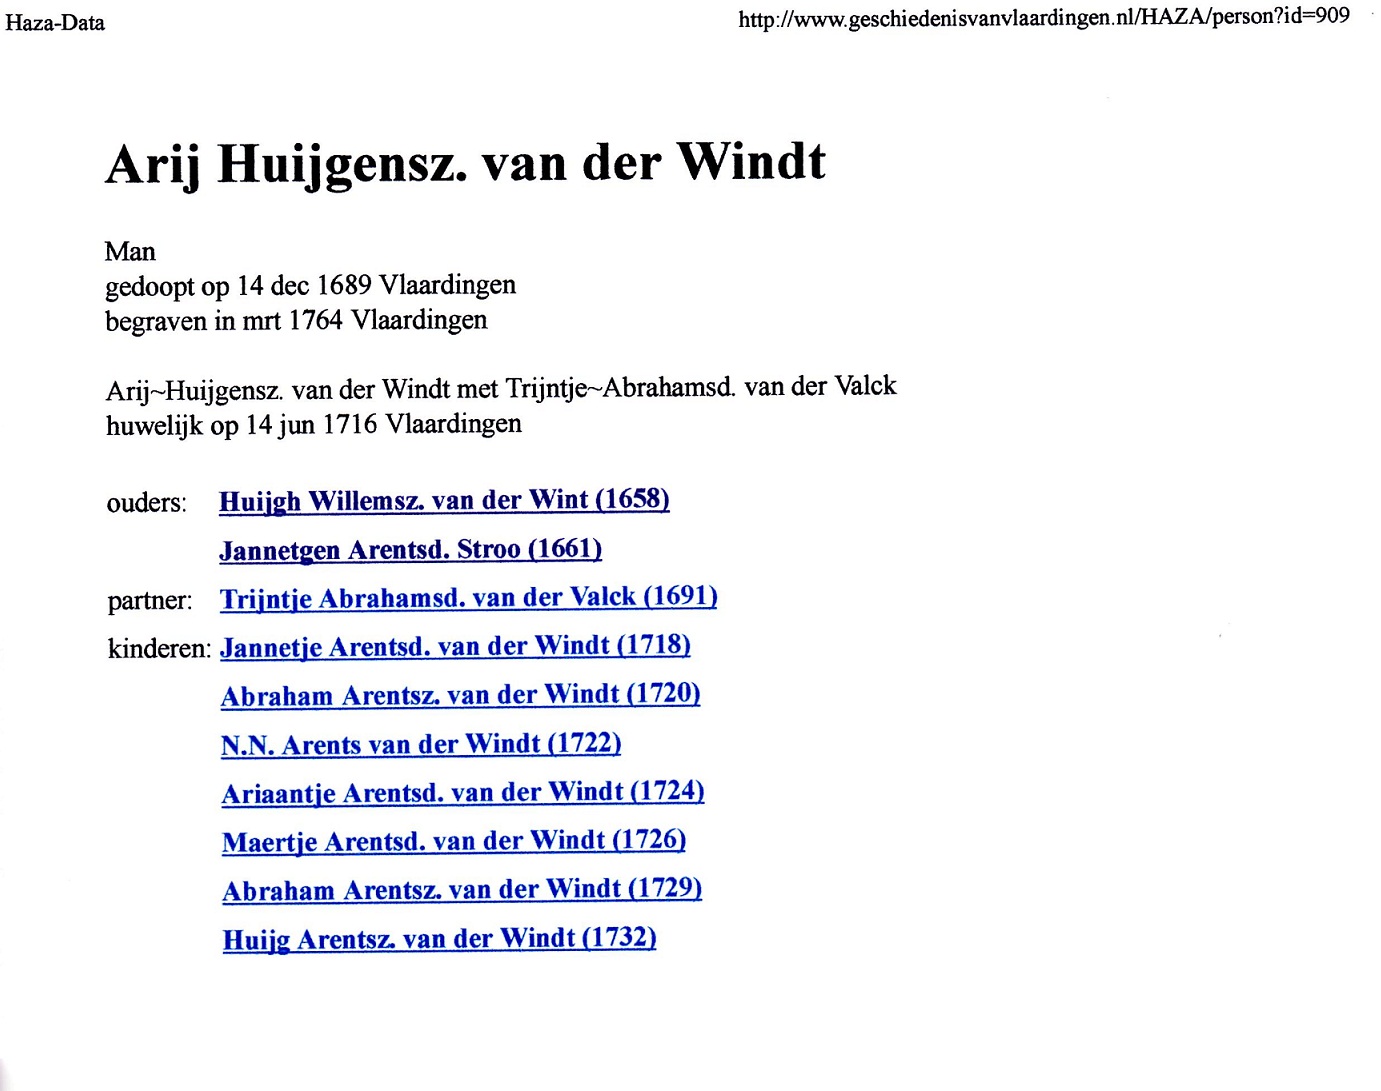 1689-12-14 Arij Huijgensz van der Windt (2)